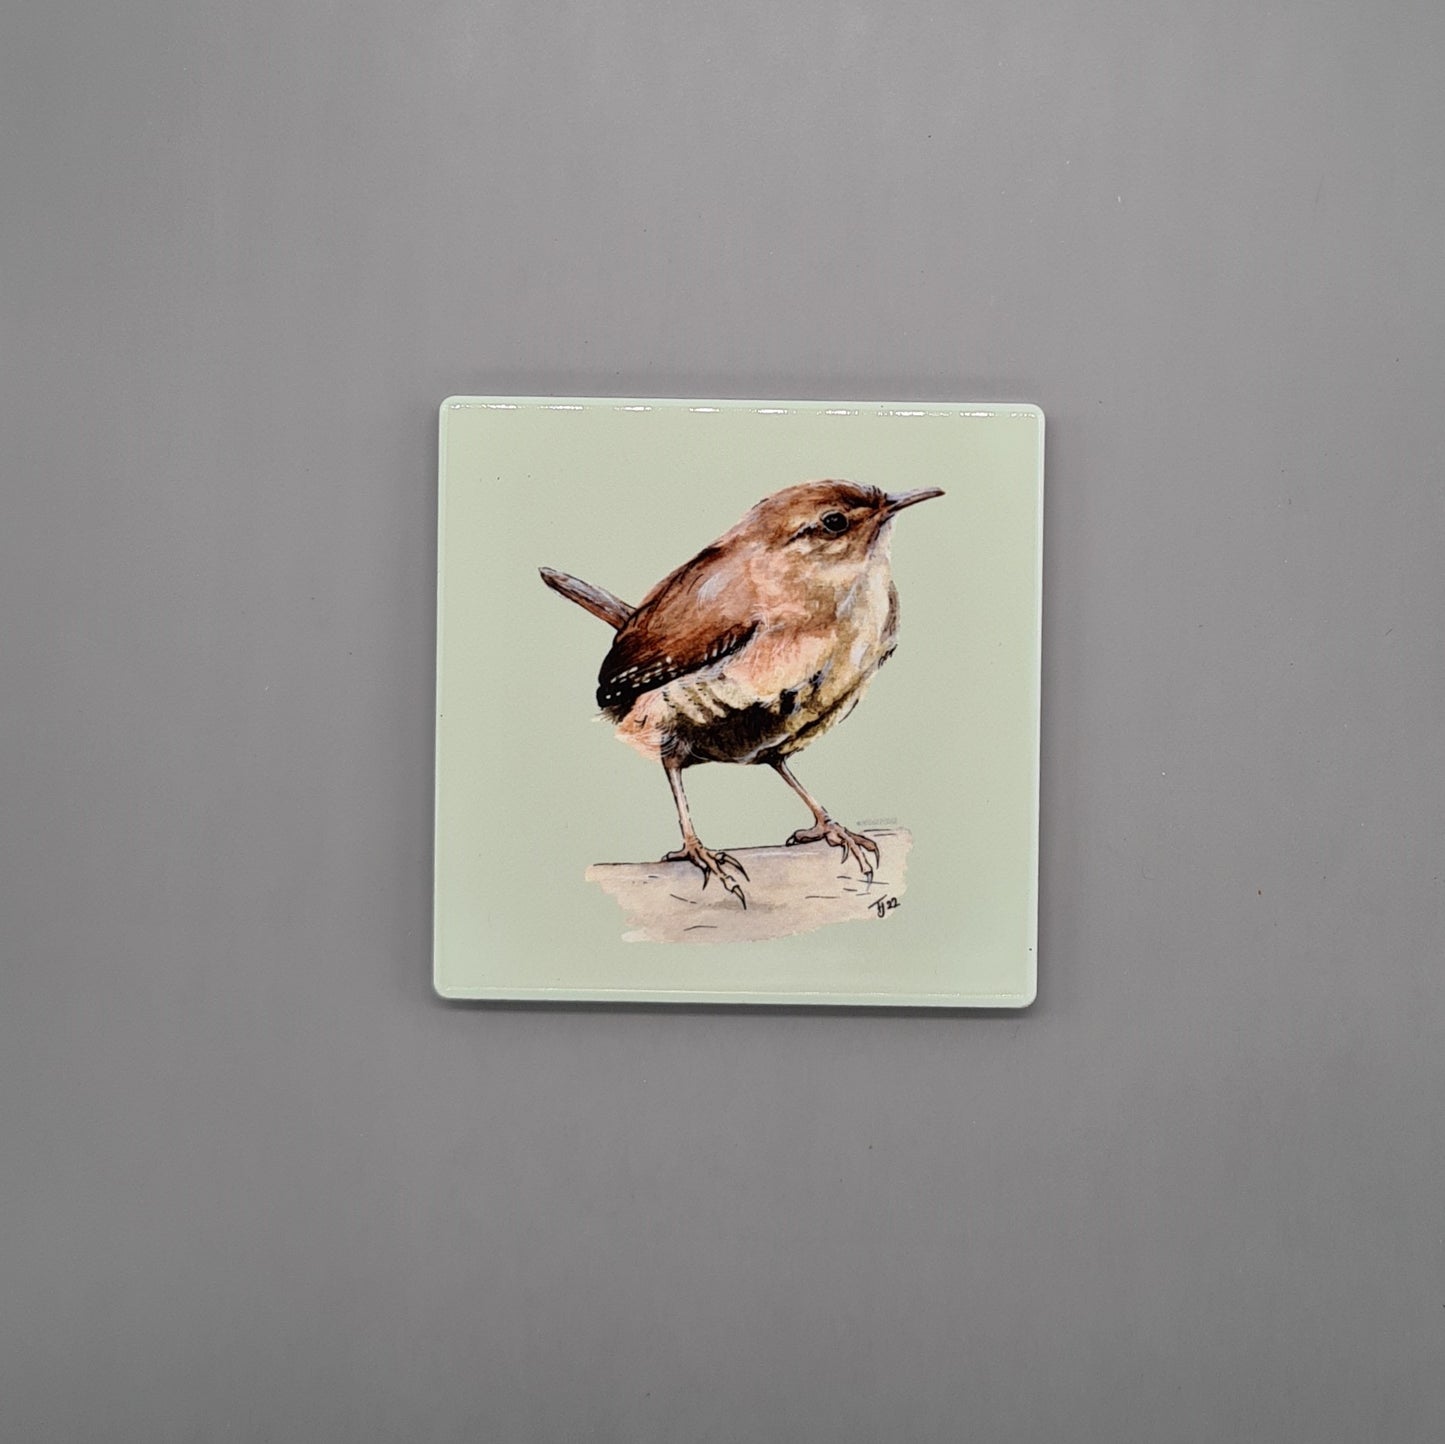 Beautiful British Wren Art Ceramic Coaster featuring 'Jenny Wren' Print